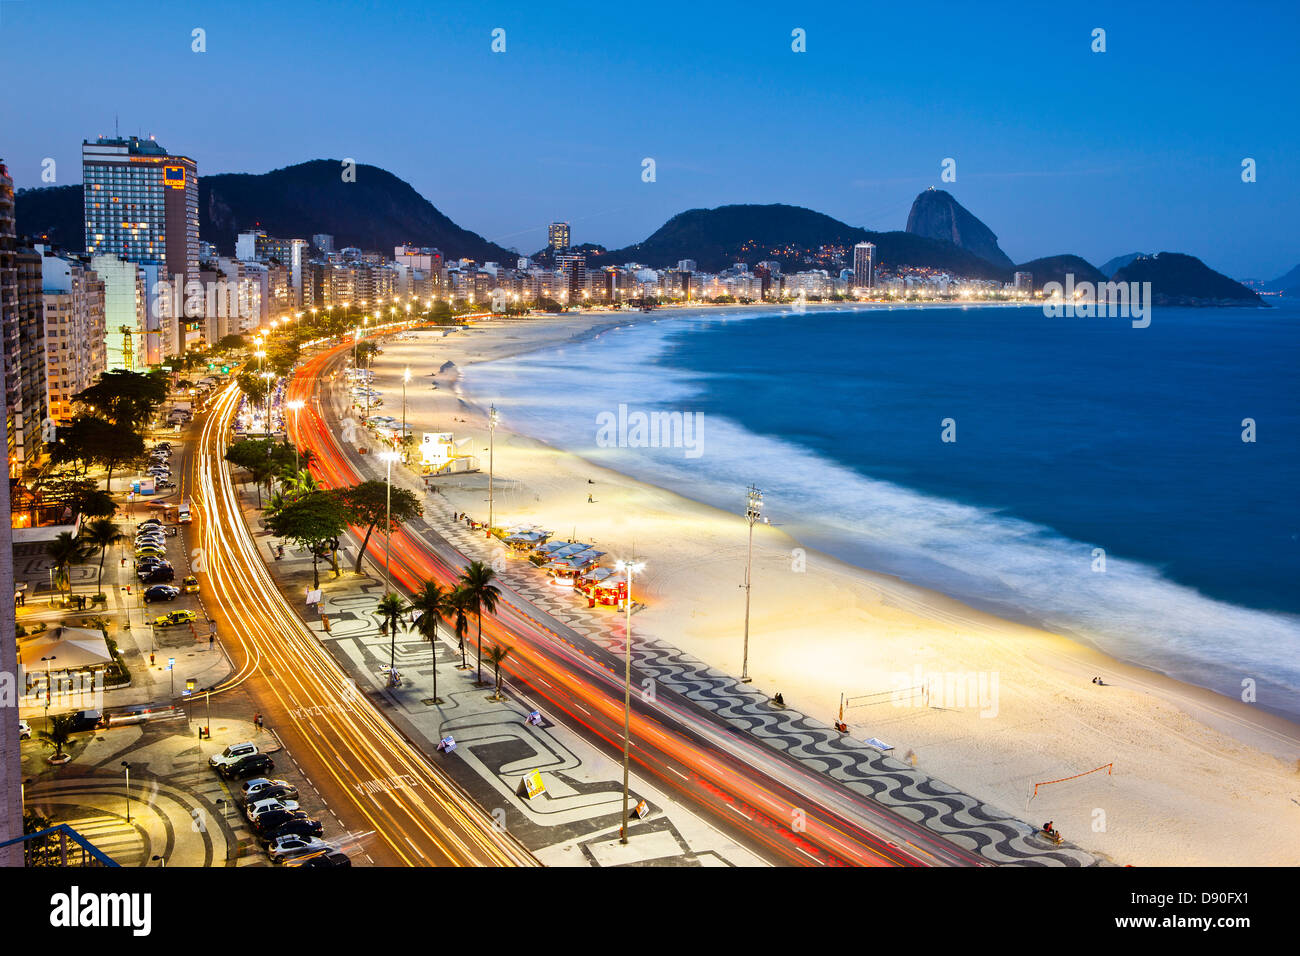 Dusk at Copacabana beach, Rio de Janeiro, Brazil Stock Photo